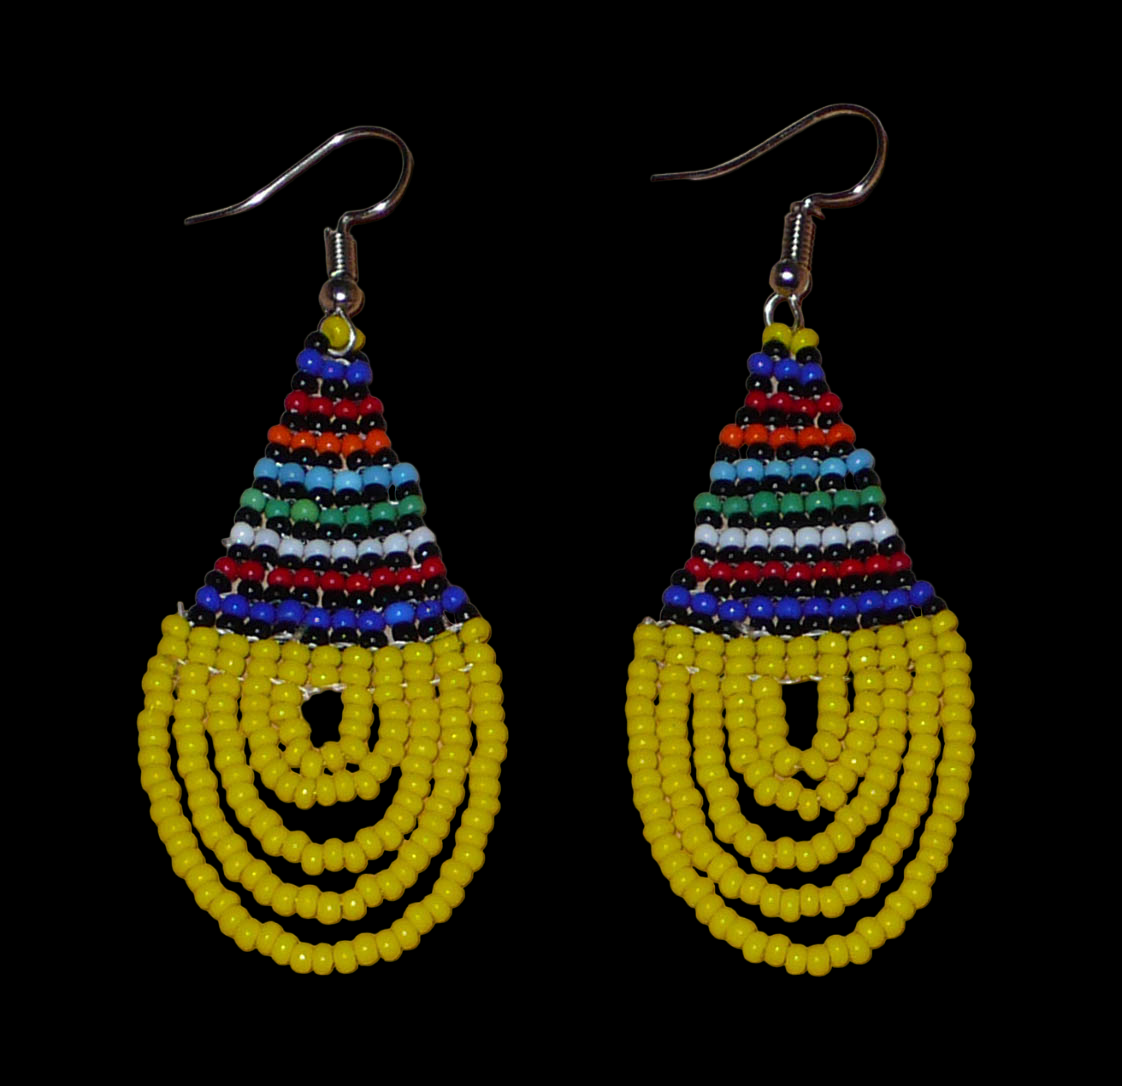 Boucles d'oreilles ethniques en forme de gouttes composées d'un tissage de perles de rocaille jaunes et multicolores. Elles mesurent 7 cm de long et 2,5 cm de large et se portent avec des crochets en acier inoxydable sur des oreilles percées. 